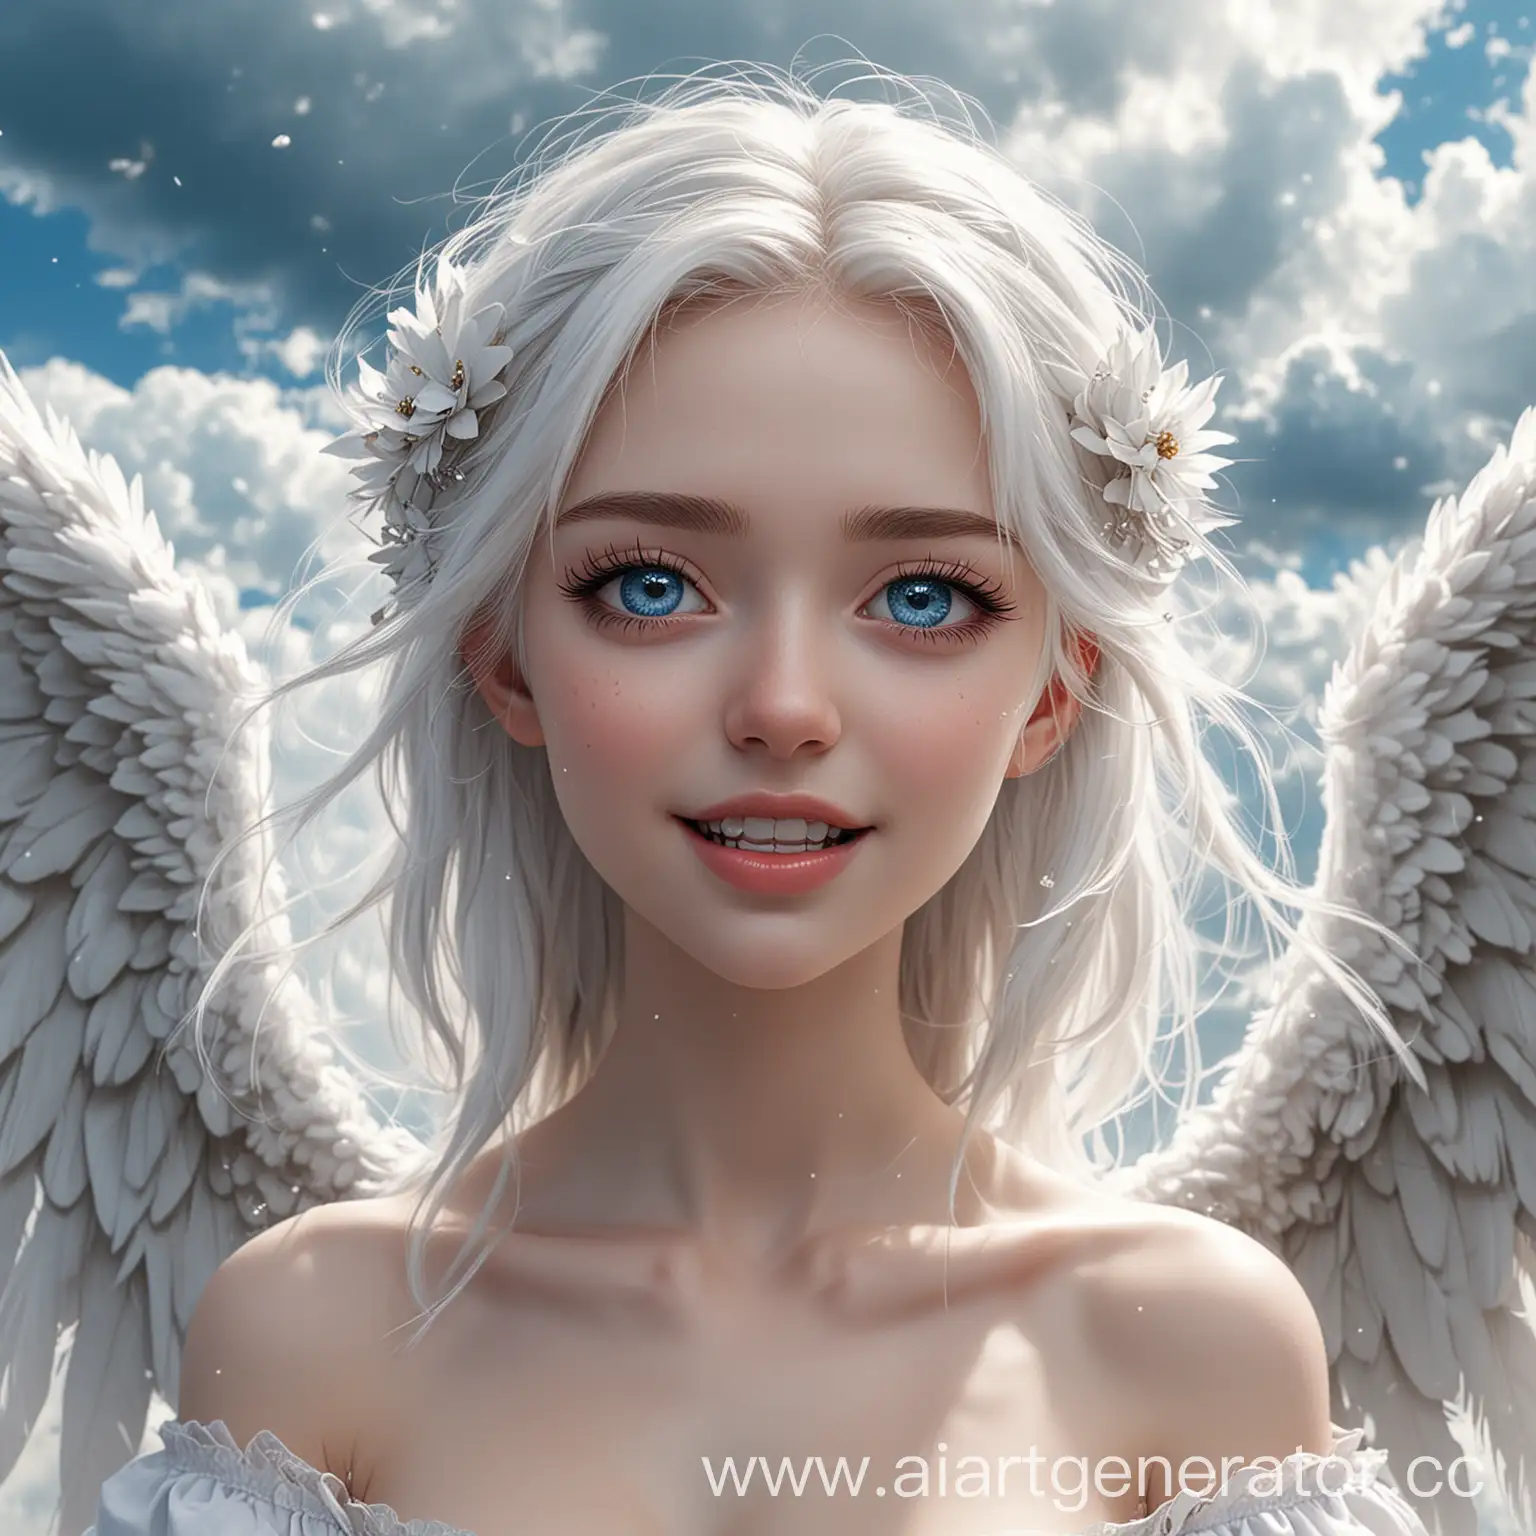 25 летняя Девушка с невероятными сияющими голубыми глазами, с белыми крыльями, как у ангела и белыми волосами. С белоснежной кожей, приоткрытым ртом и маленькими КЛЫКАМИ, как у вампира. в ПОЛНЫЙ РОСТ на фоне облаков, в стиле аниме,